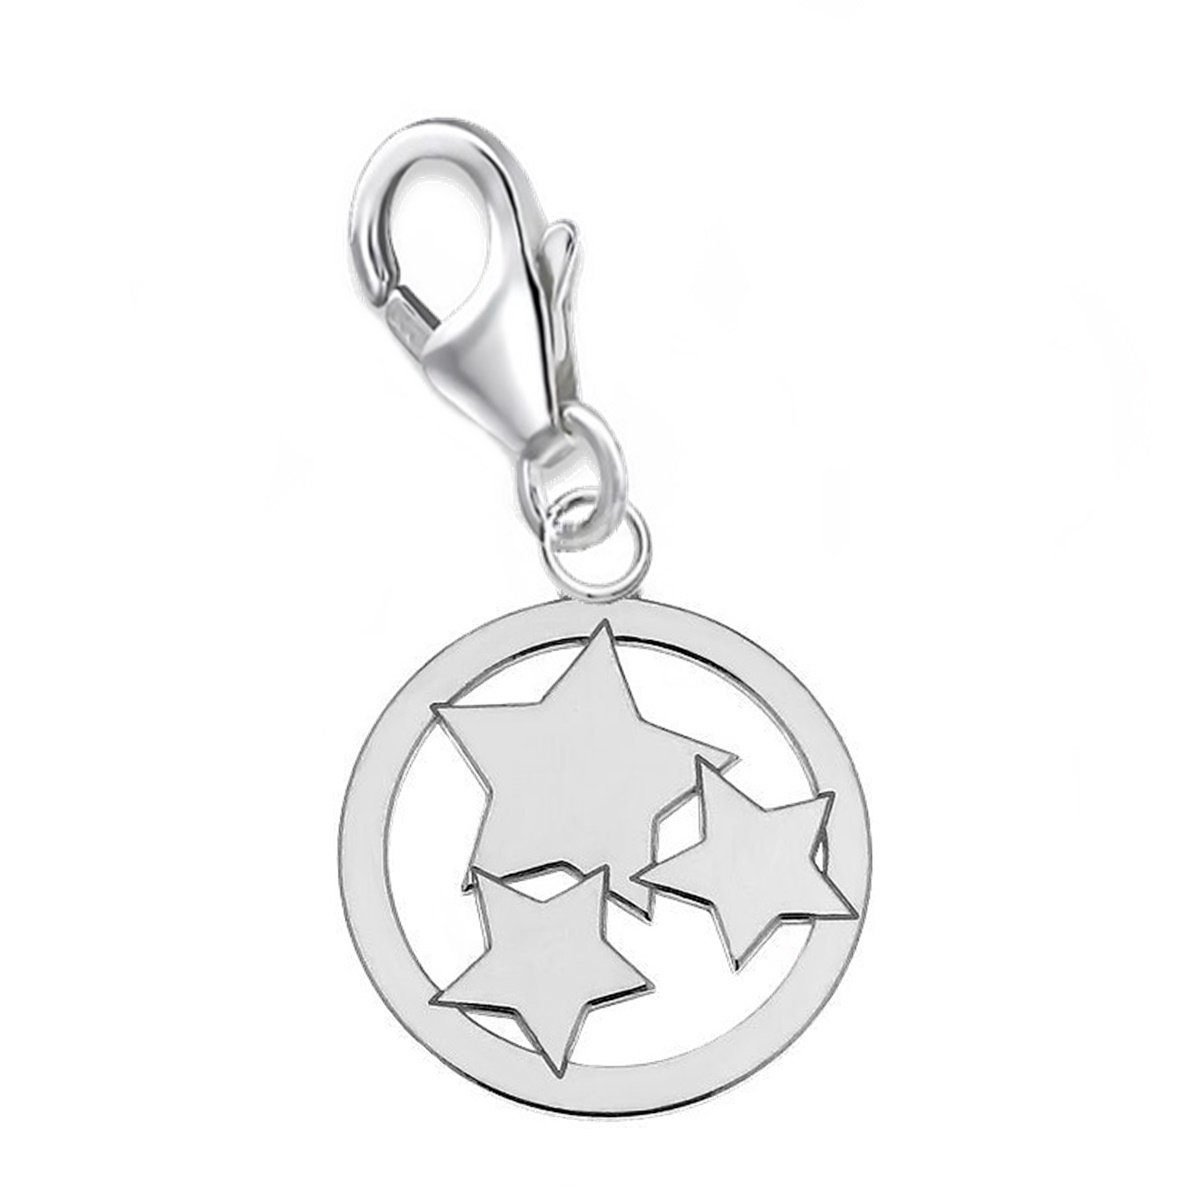 Goldene Hufeisen Charm Stern Stern Karabiner Charm Anhänger für Bettelarmband 925 Silber (inkl. Etui), für Gliederarmband oder Halskette